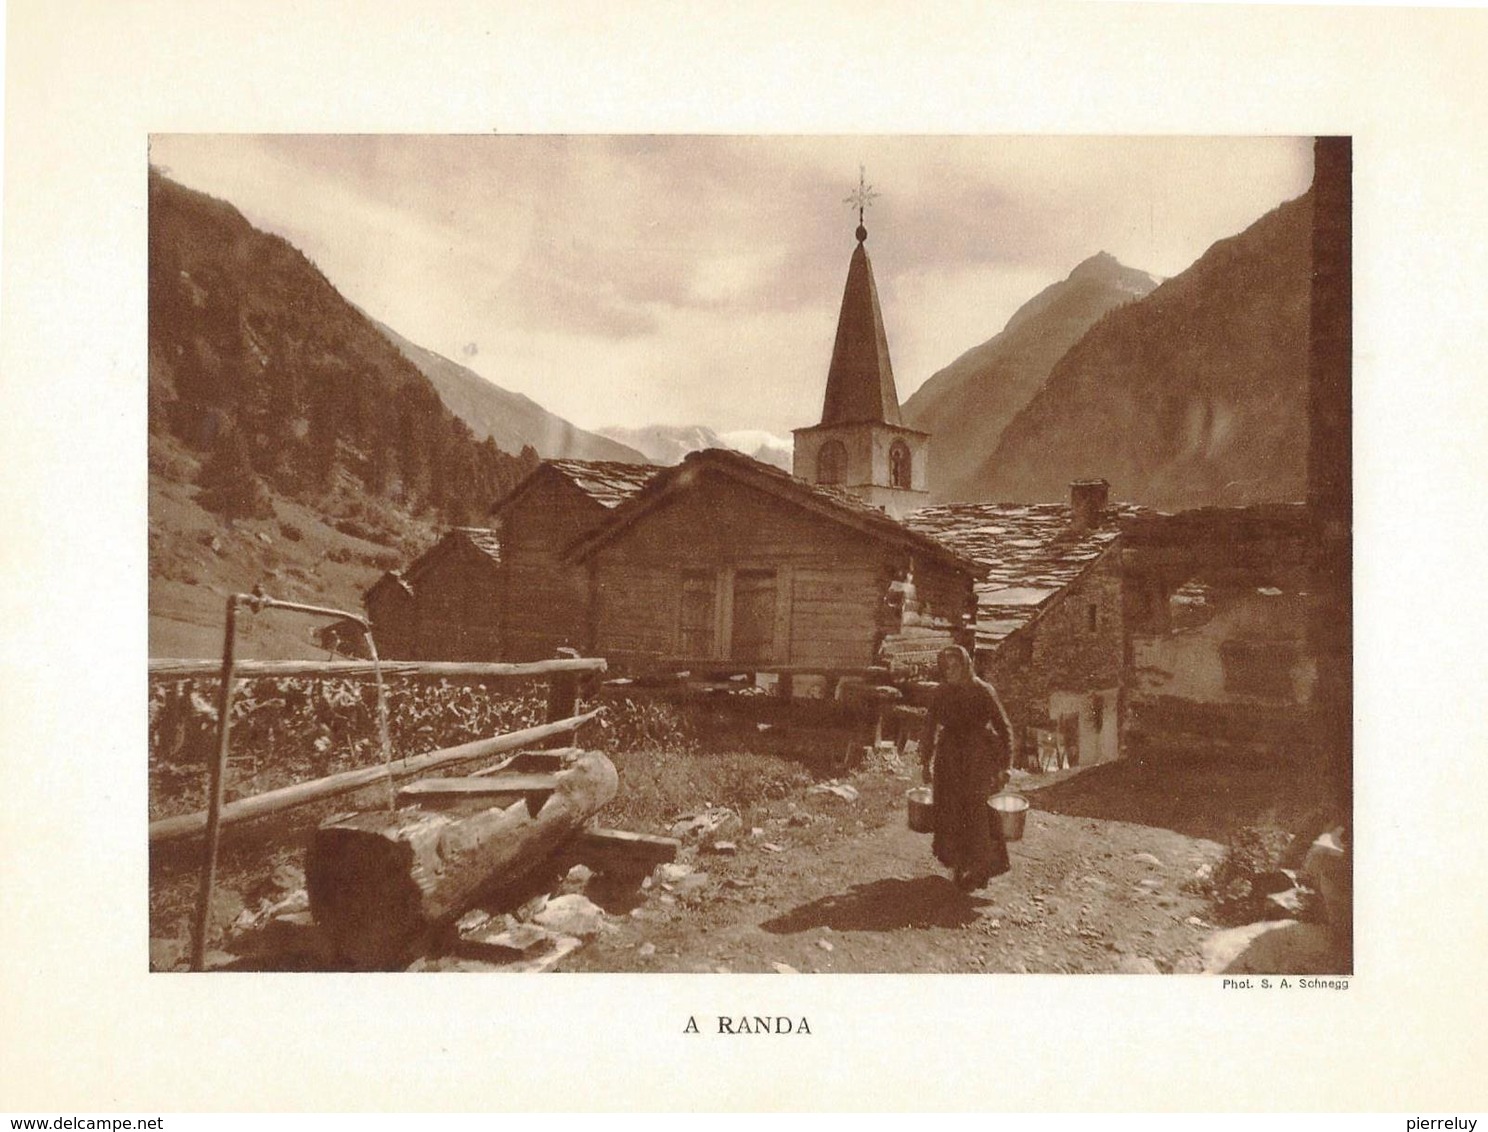 De Viège à Zermatt - Randa - Balfrin - Stalden - Saint-Nicolas - Pont Kinn - Randa